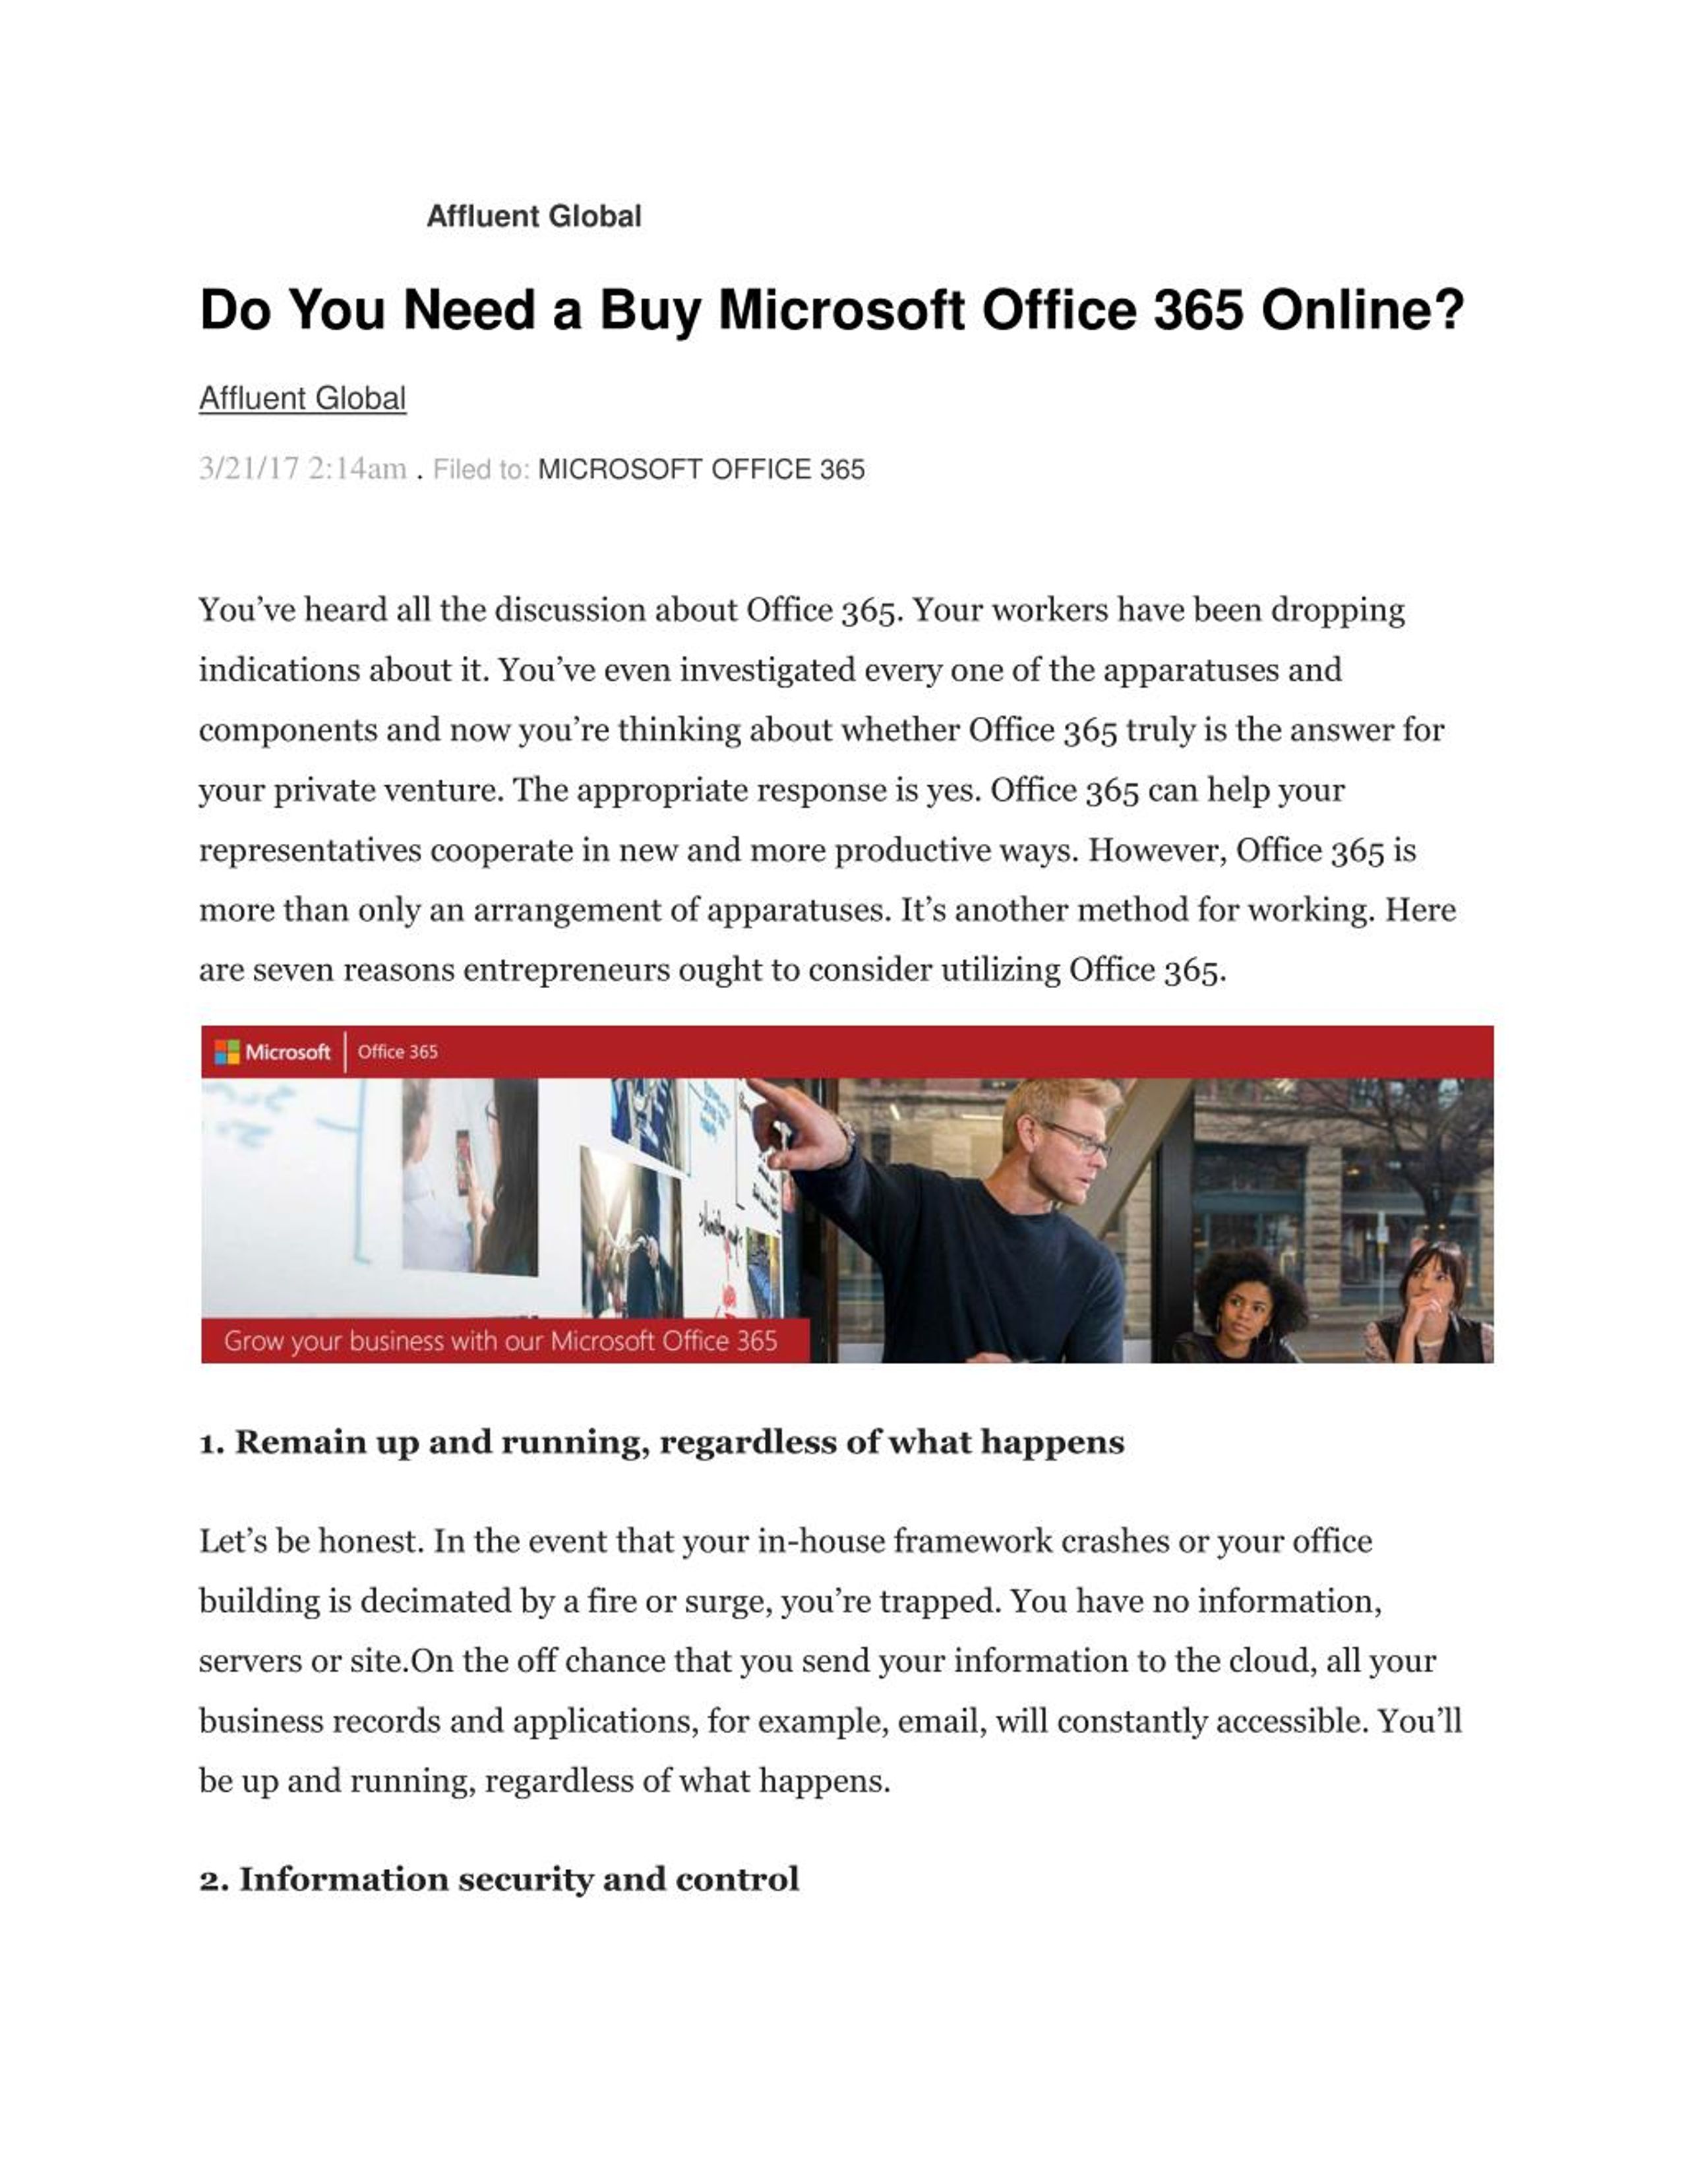 Do I Need Microsoft Office